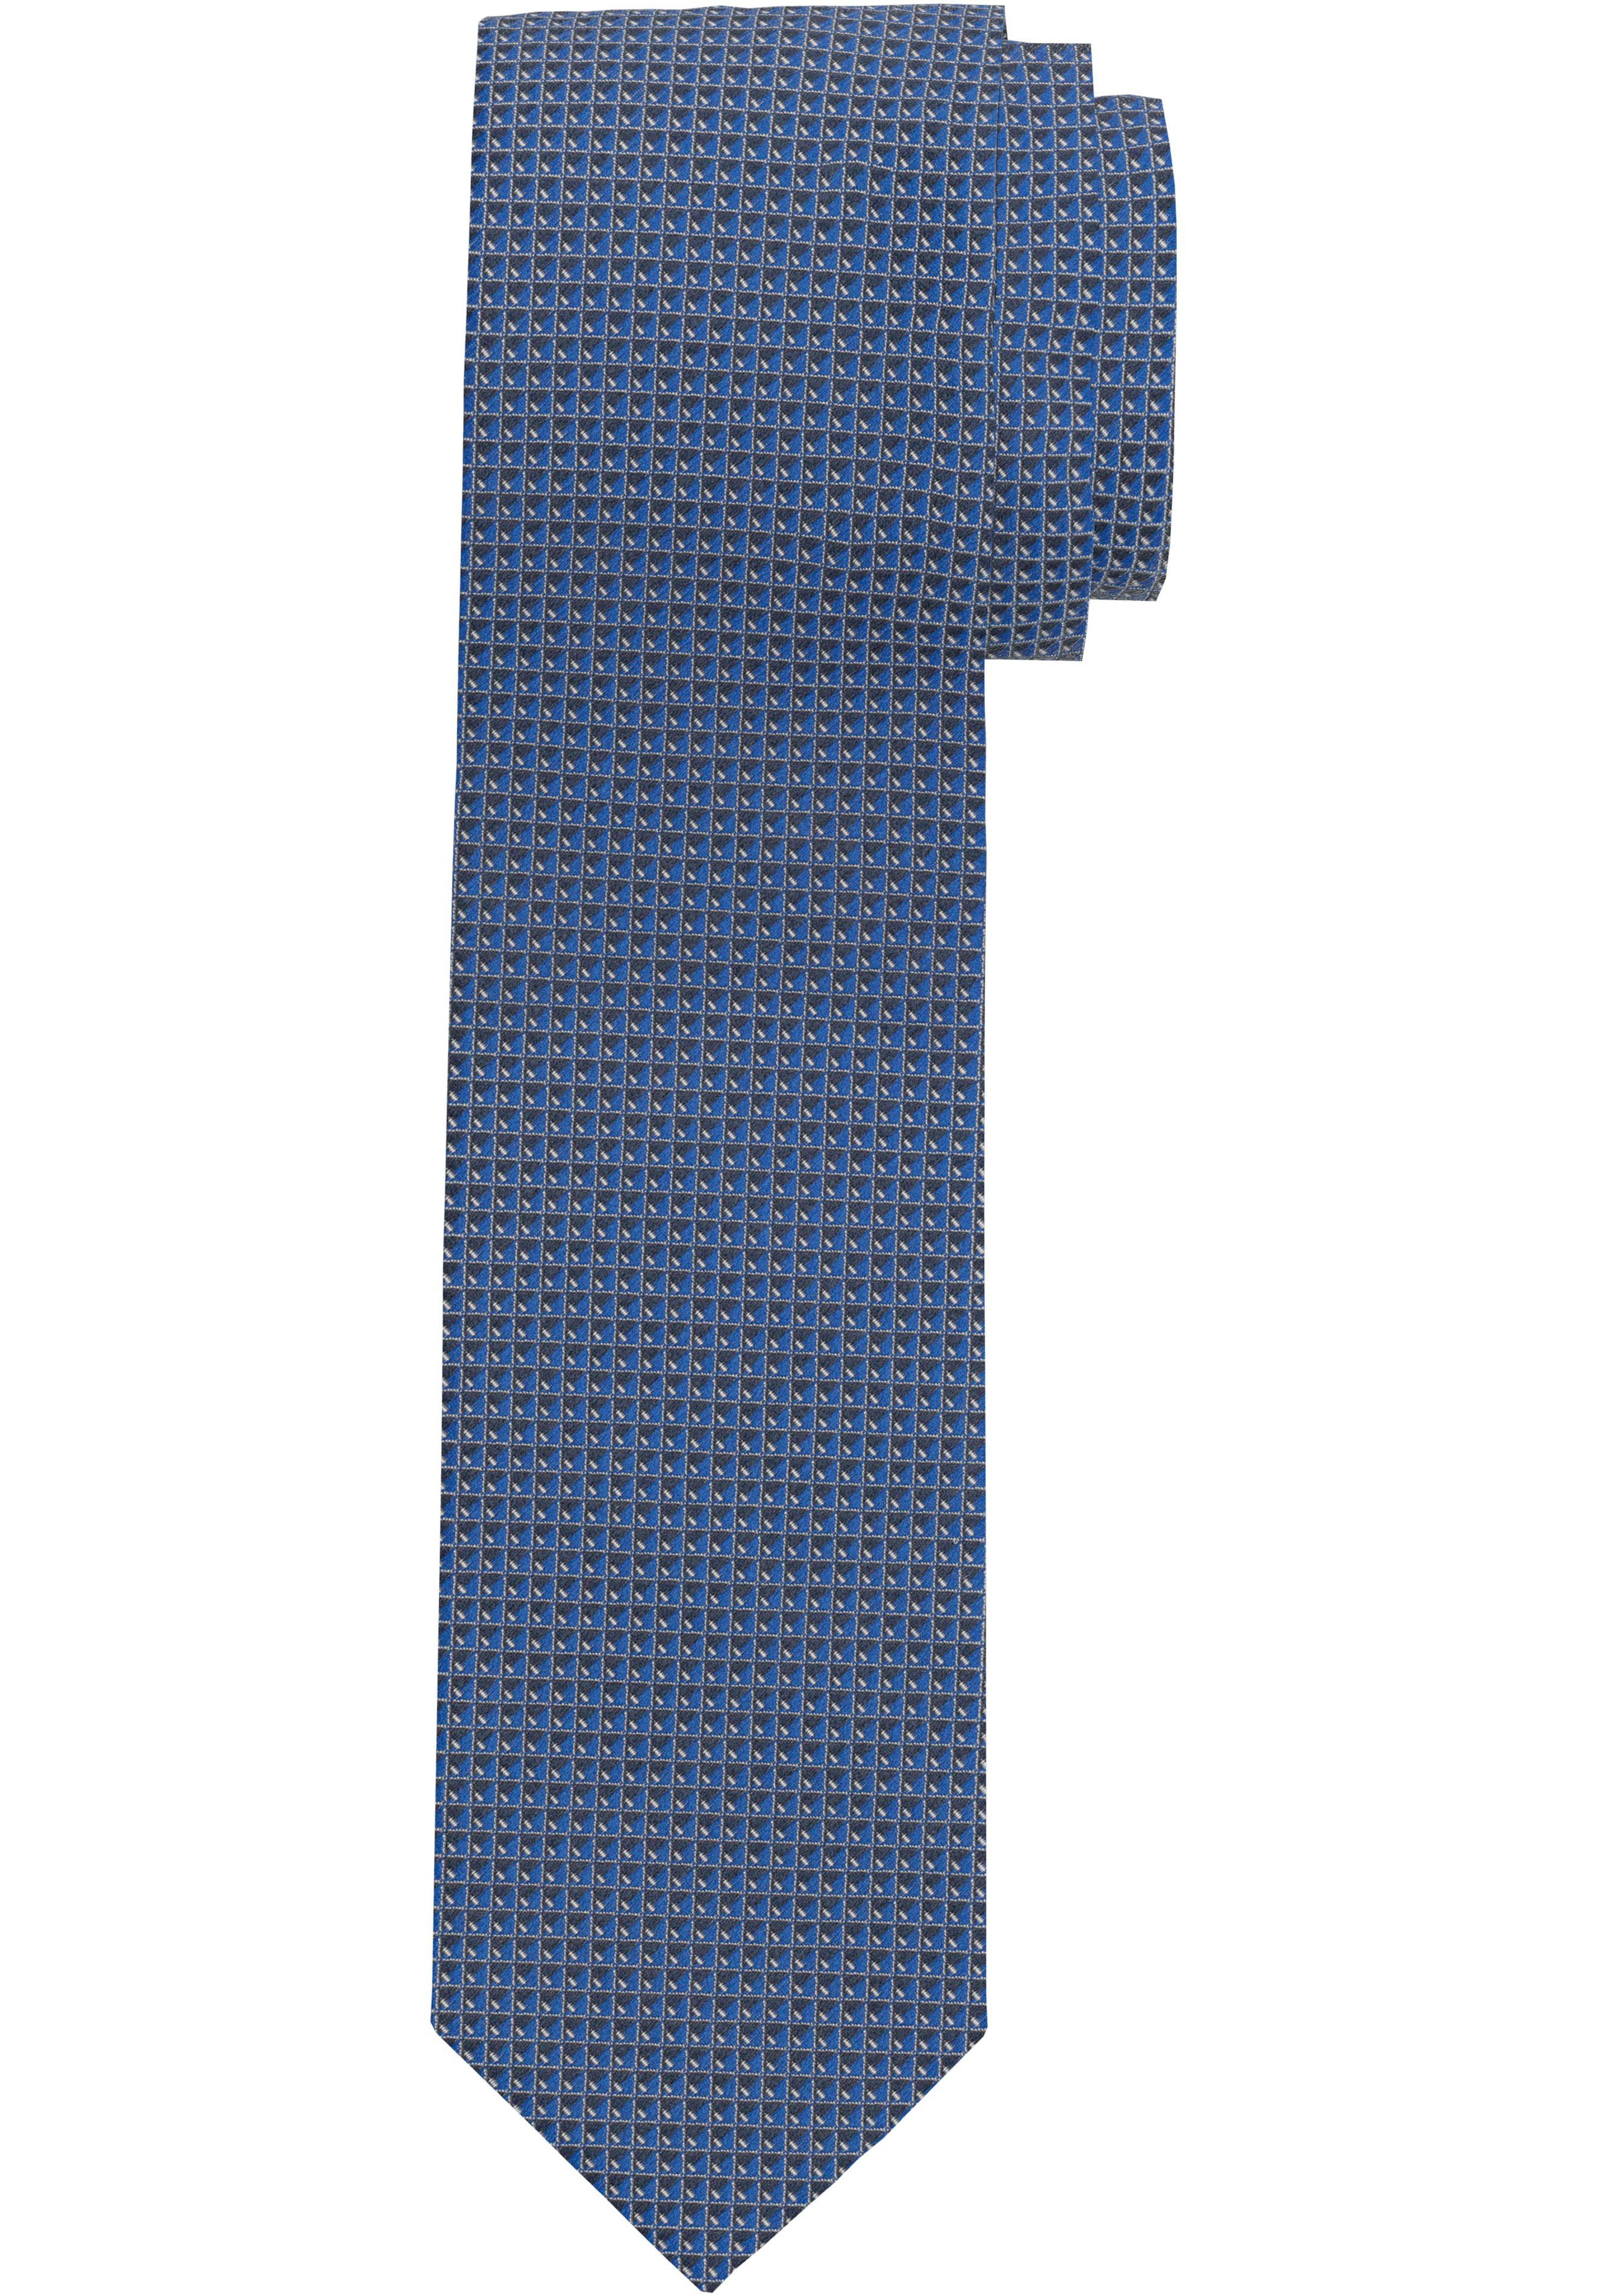 OLYMP Krawatte Strukturierte Krawatte marine | Breite Krawatten